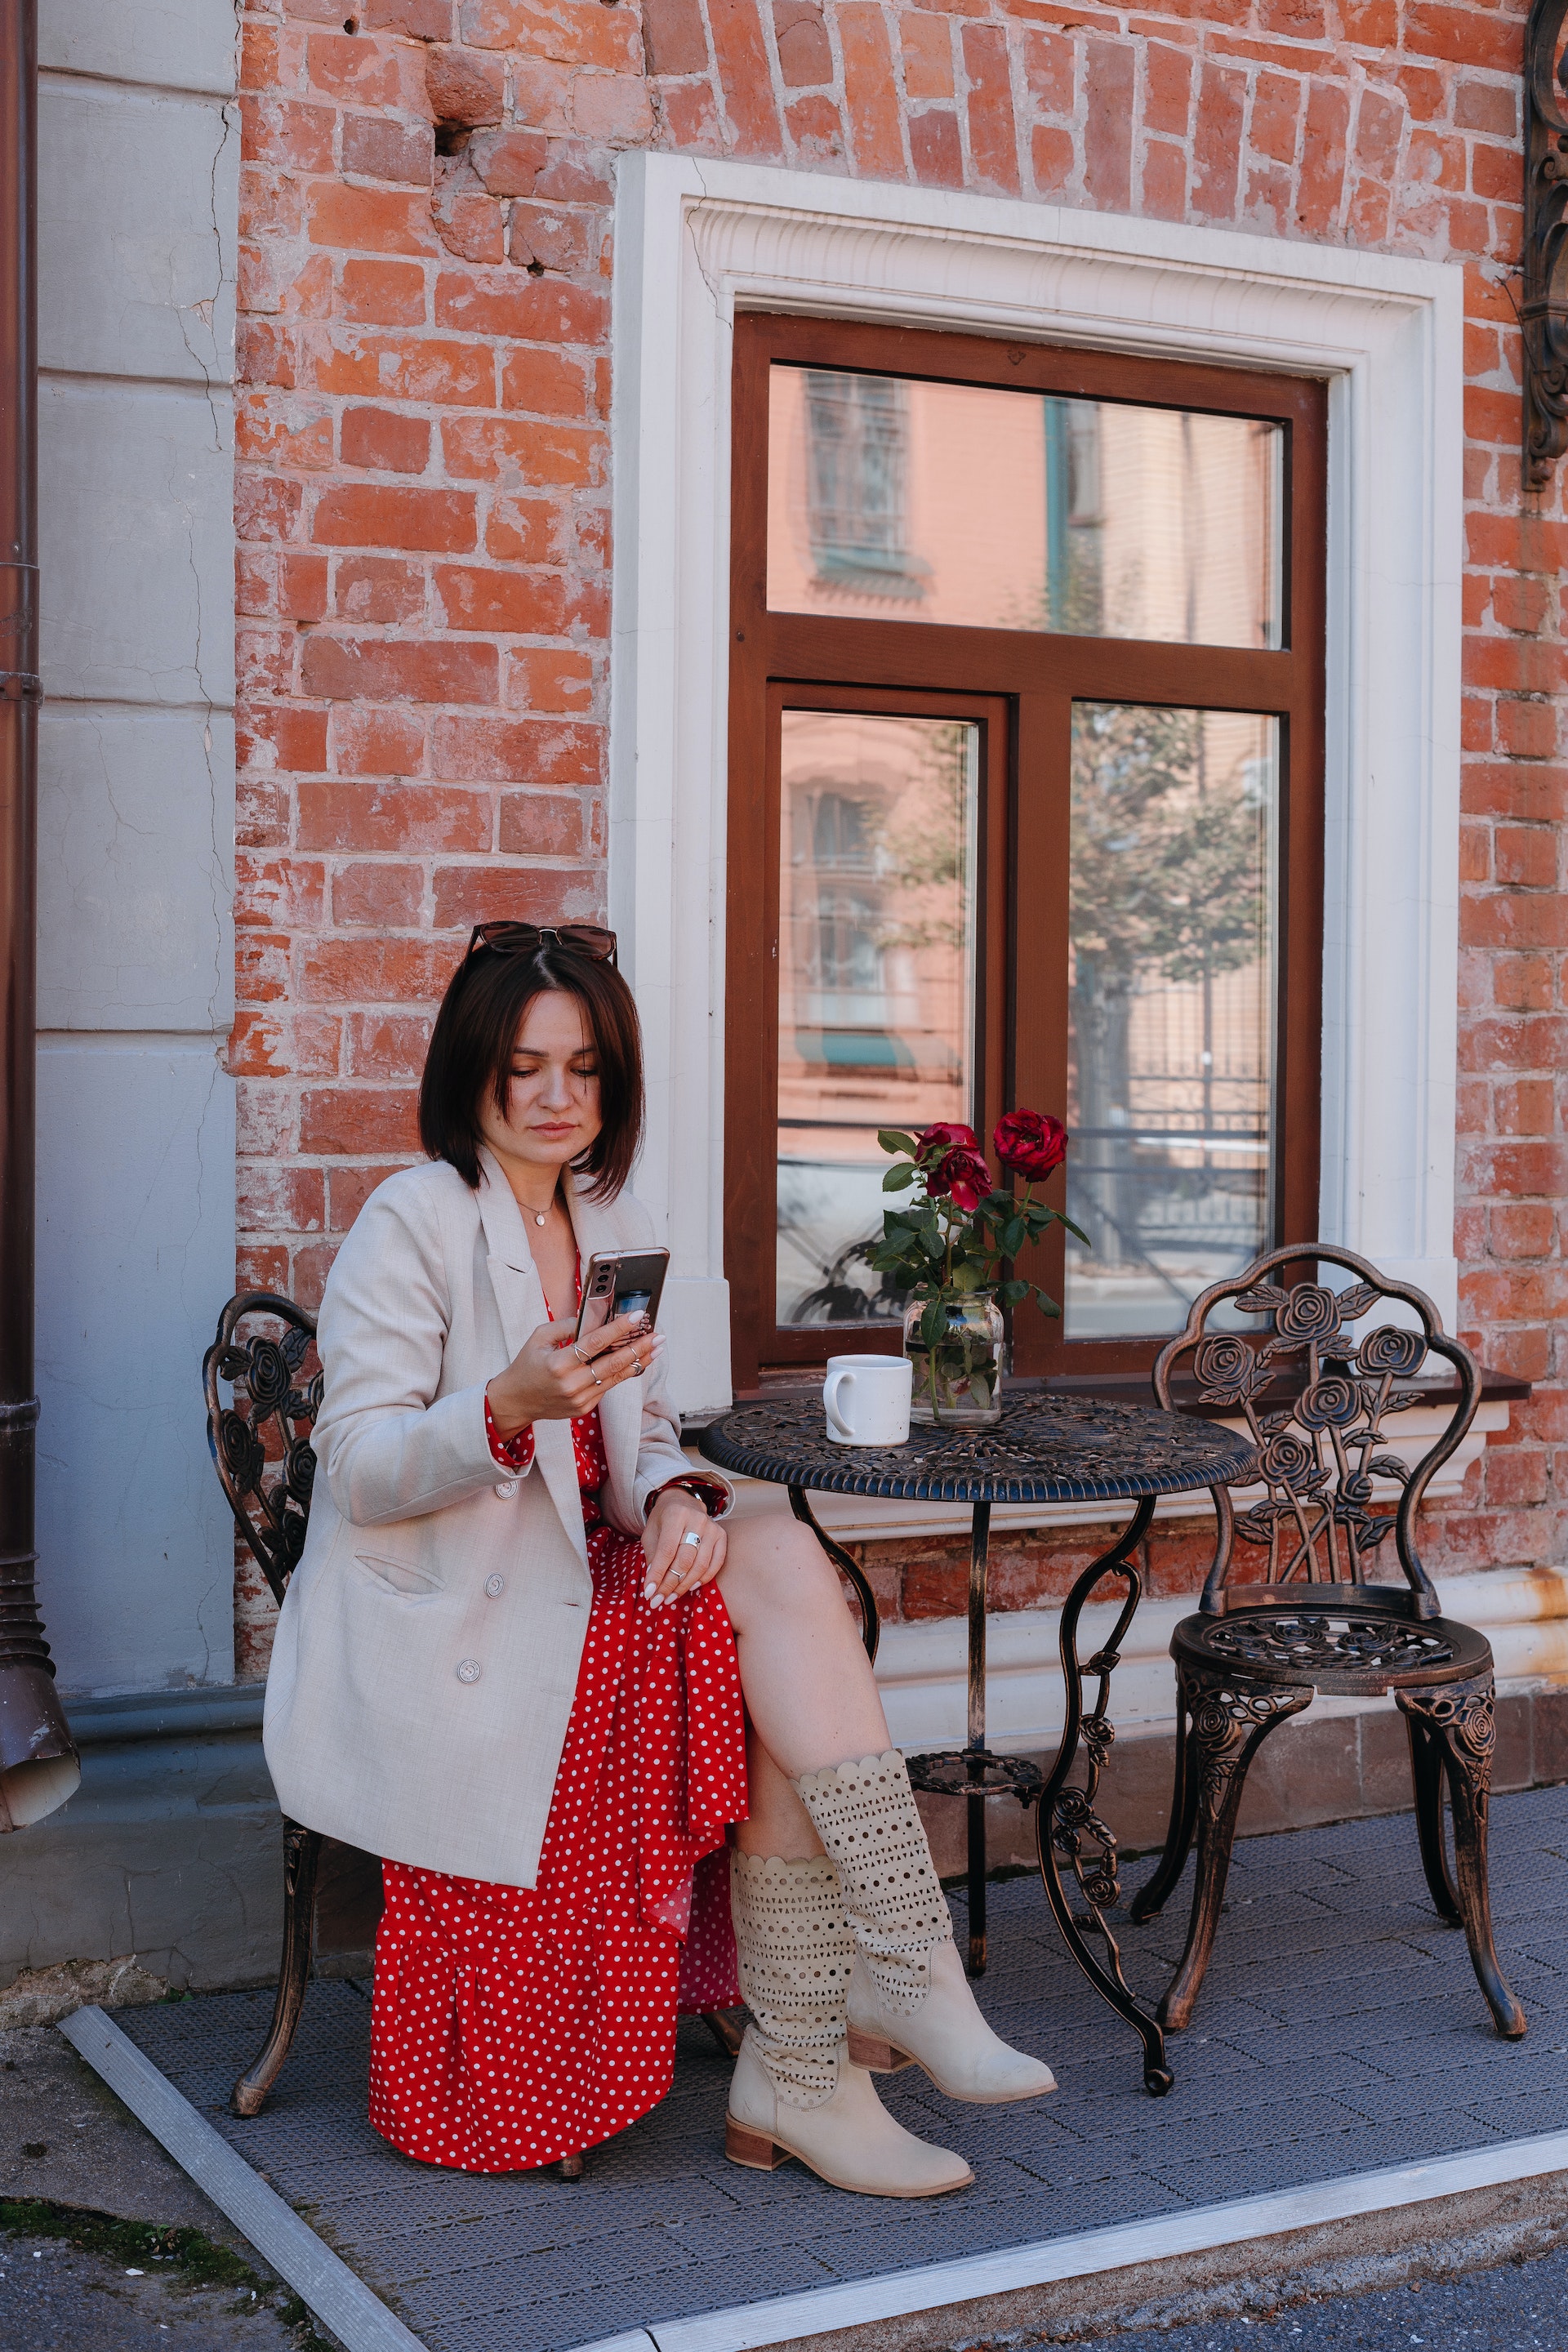 Una mujer sentada en una cafetería de la acera mientras consulta su teléfono móvil. | Foto: Pexels